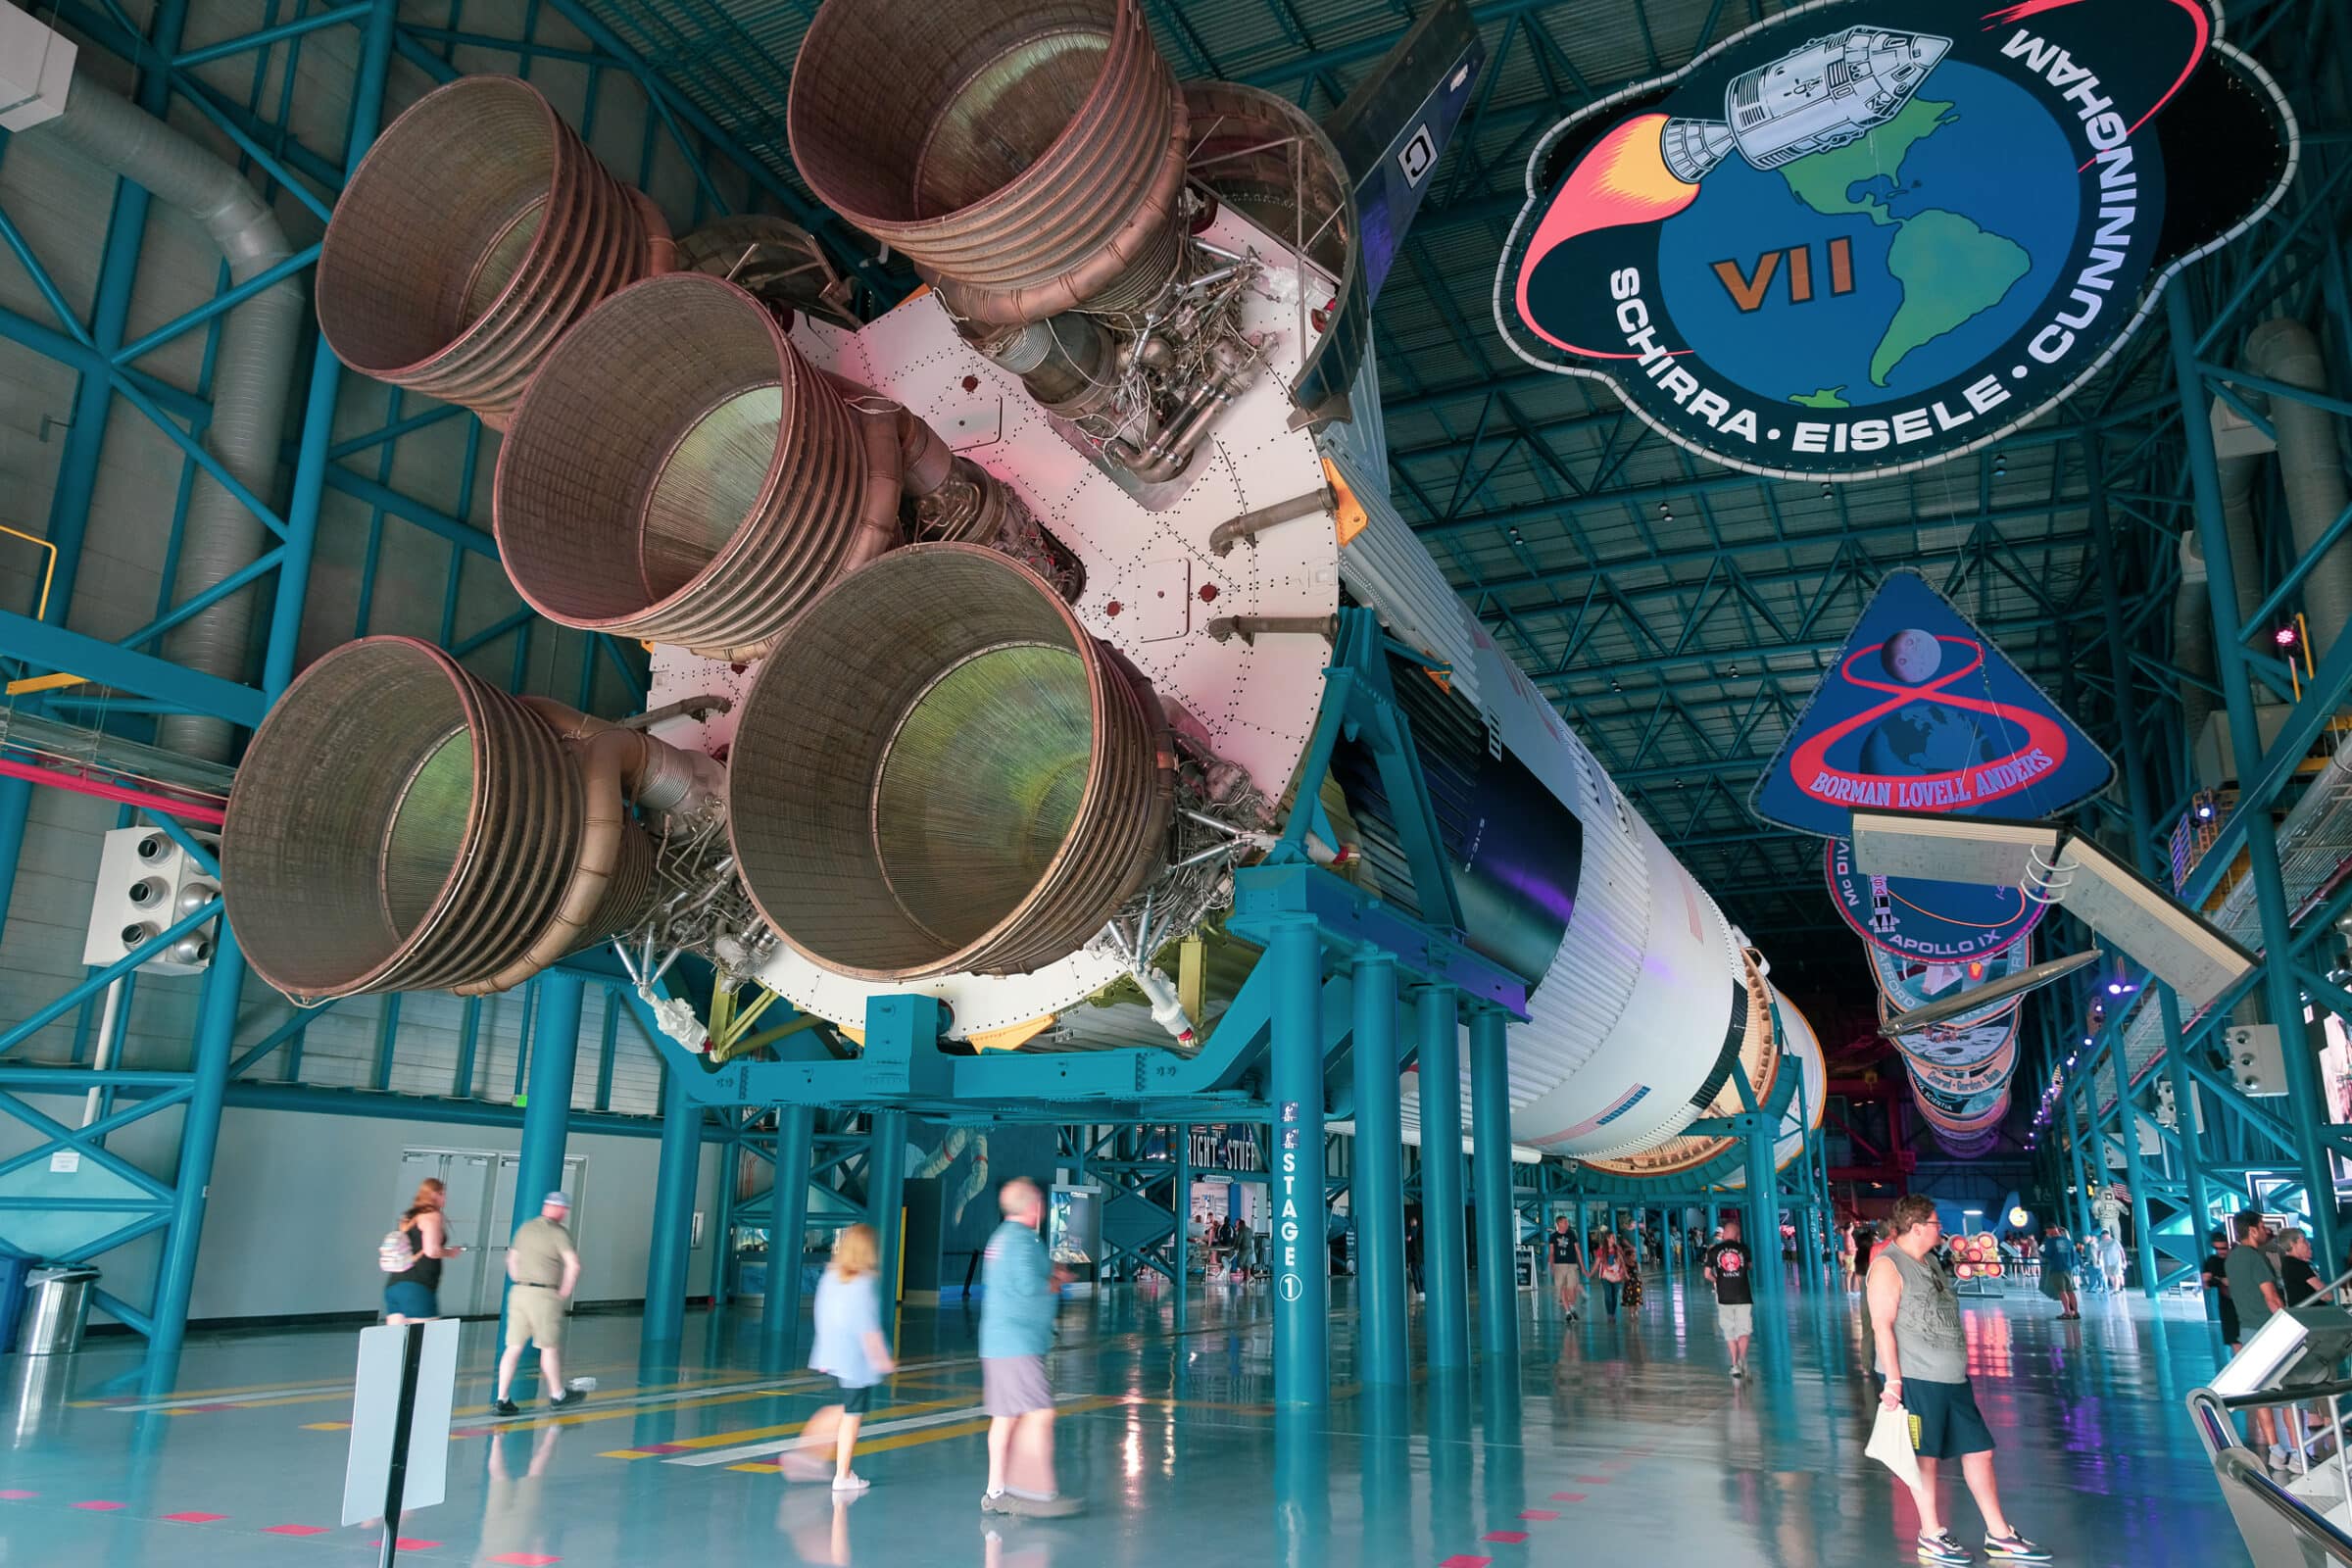 Il razzo Saturn V/Apollo, il razzo più potente mai costruito | Mette in risalto roadtrip New York-Key West